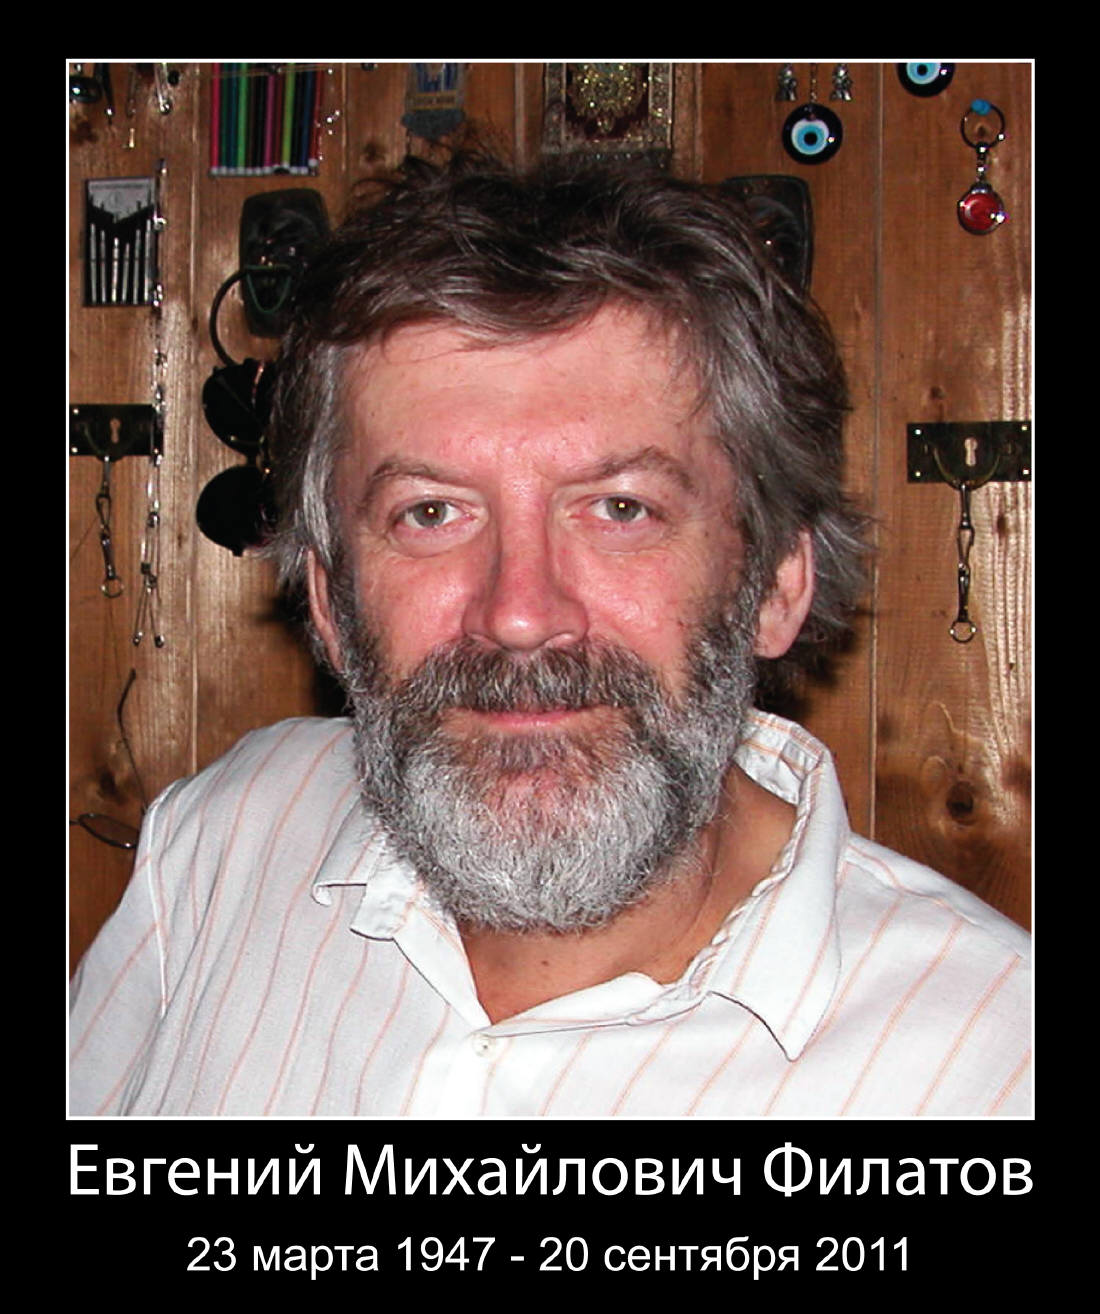 20 сентября 2011 года умер Евгений Михайлович Филатов. Фото Фёдора Соловьёва, 2005 год.